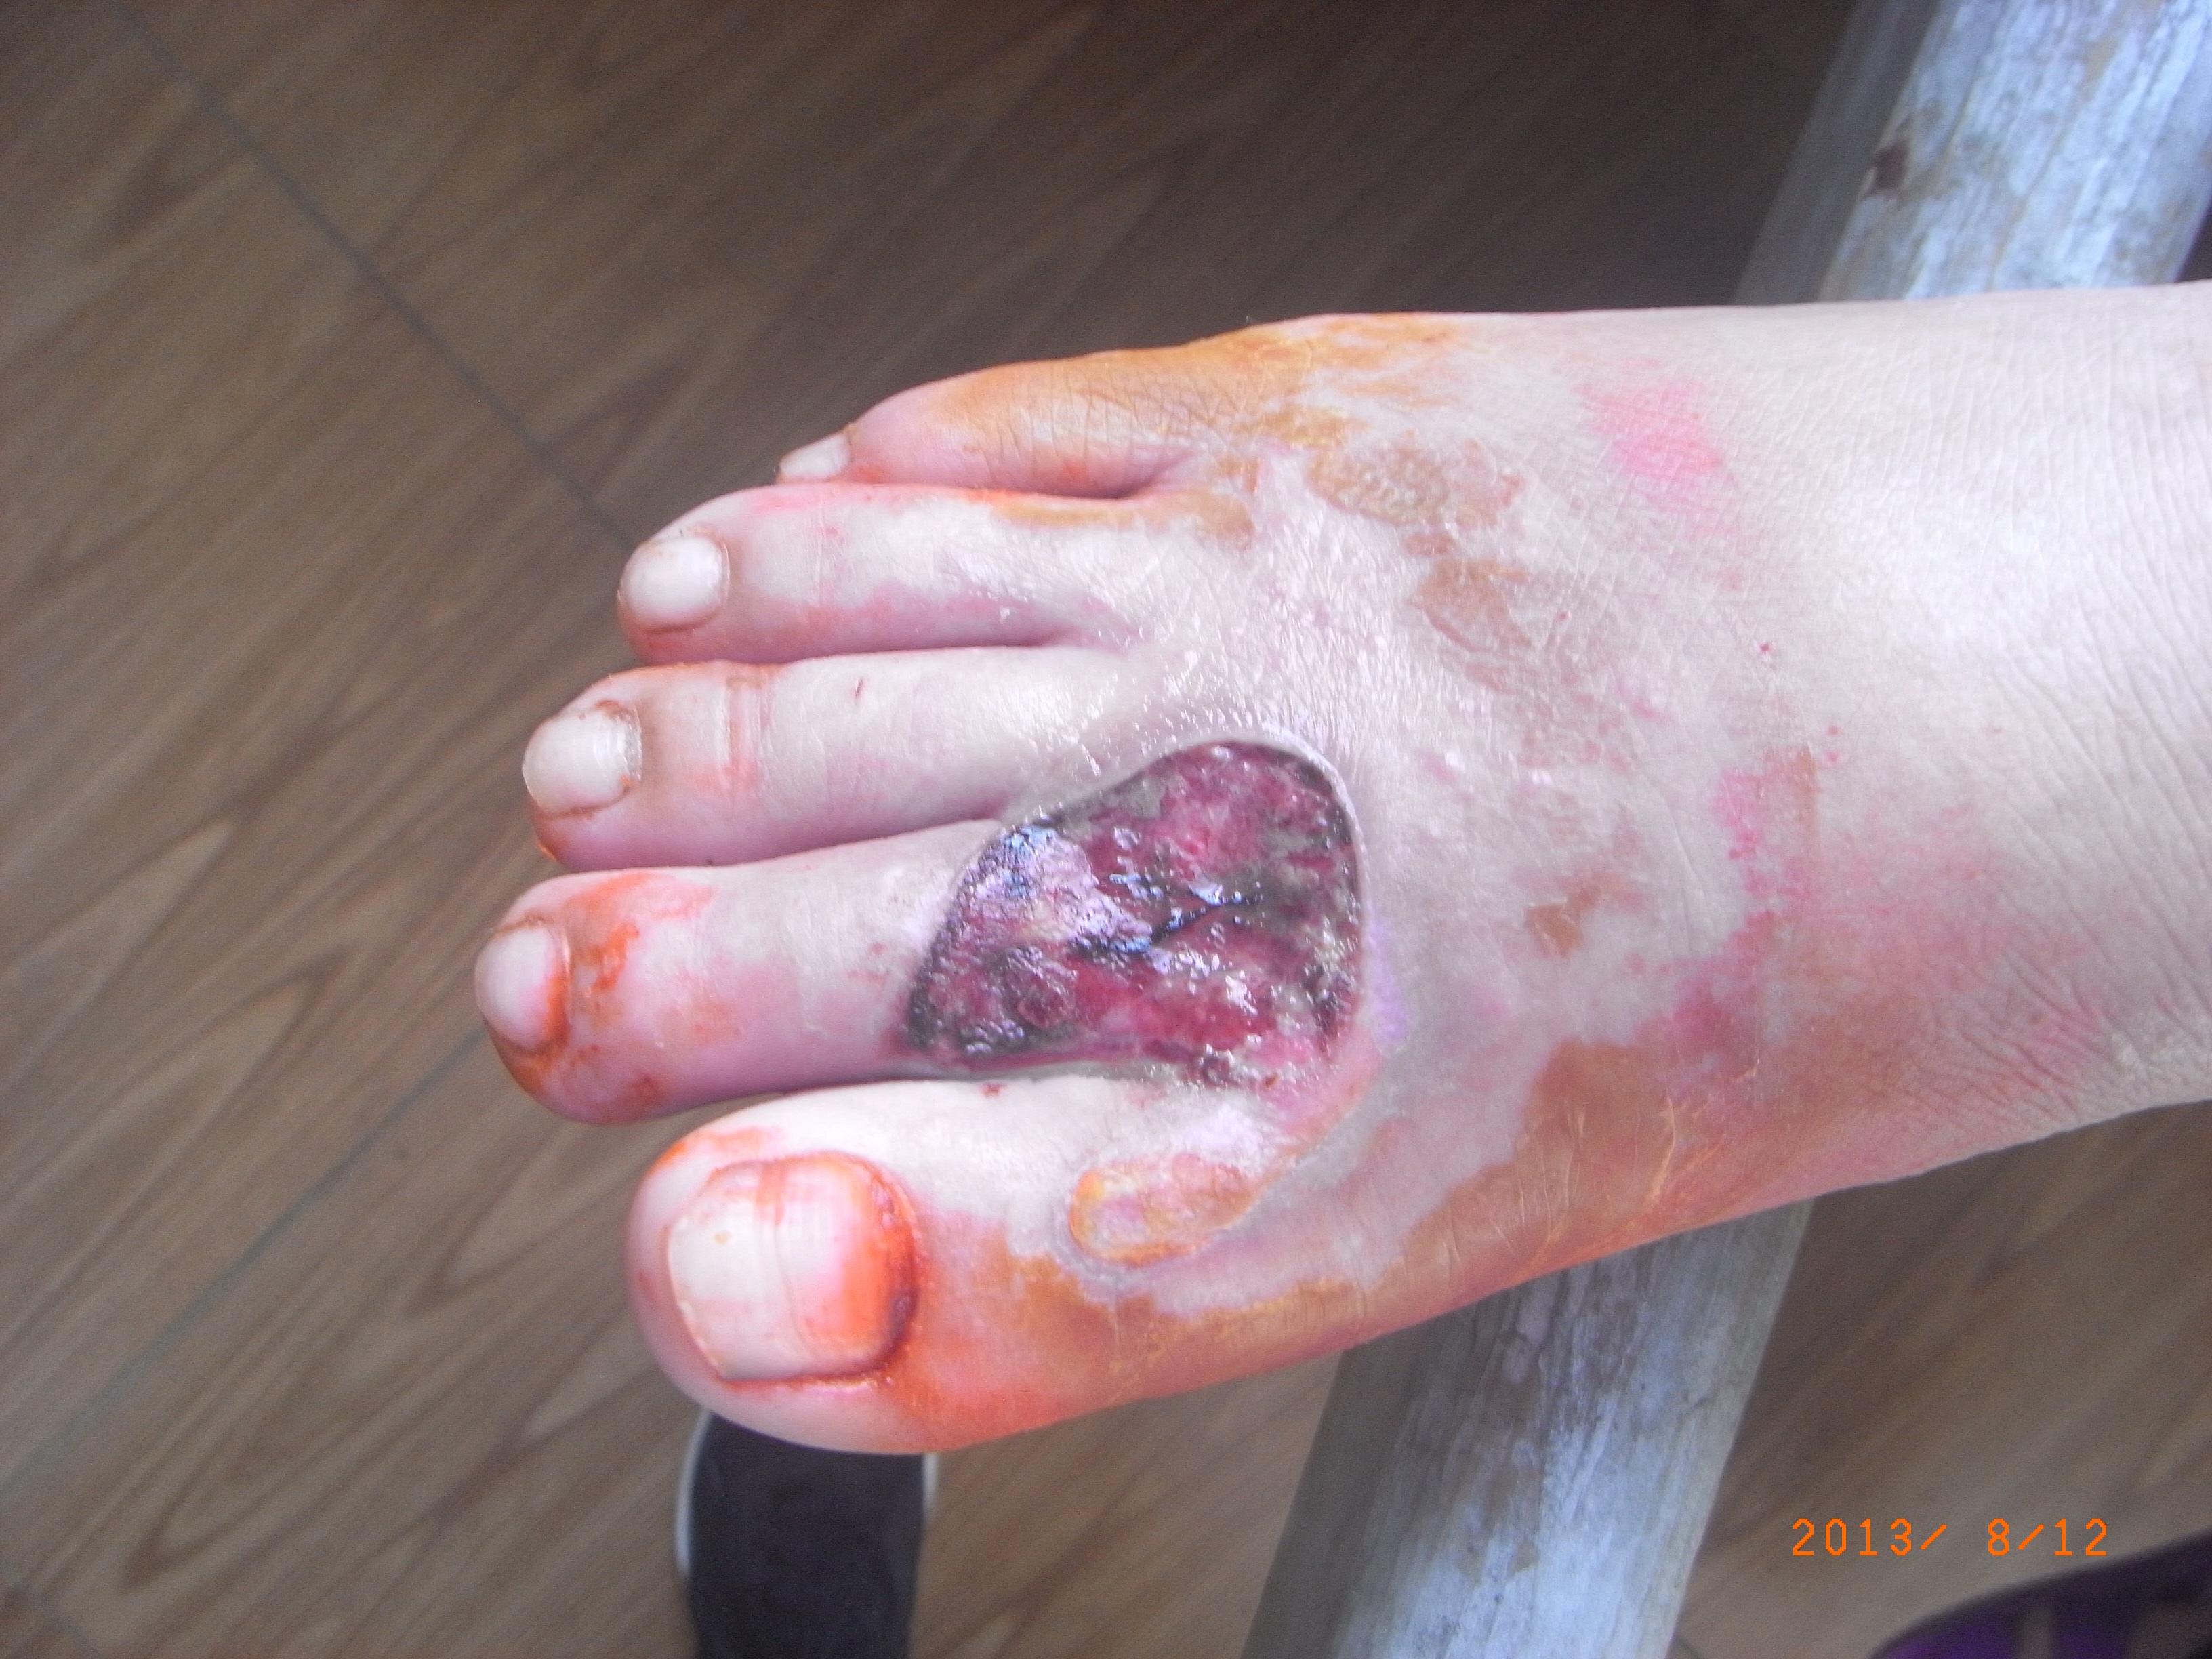 左脚背远端皮肤挫裂伤伴感染